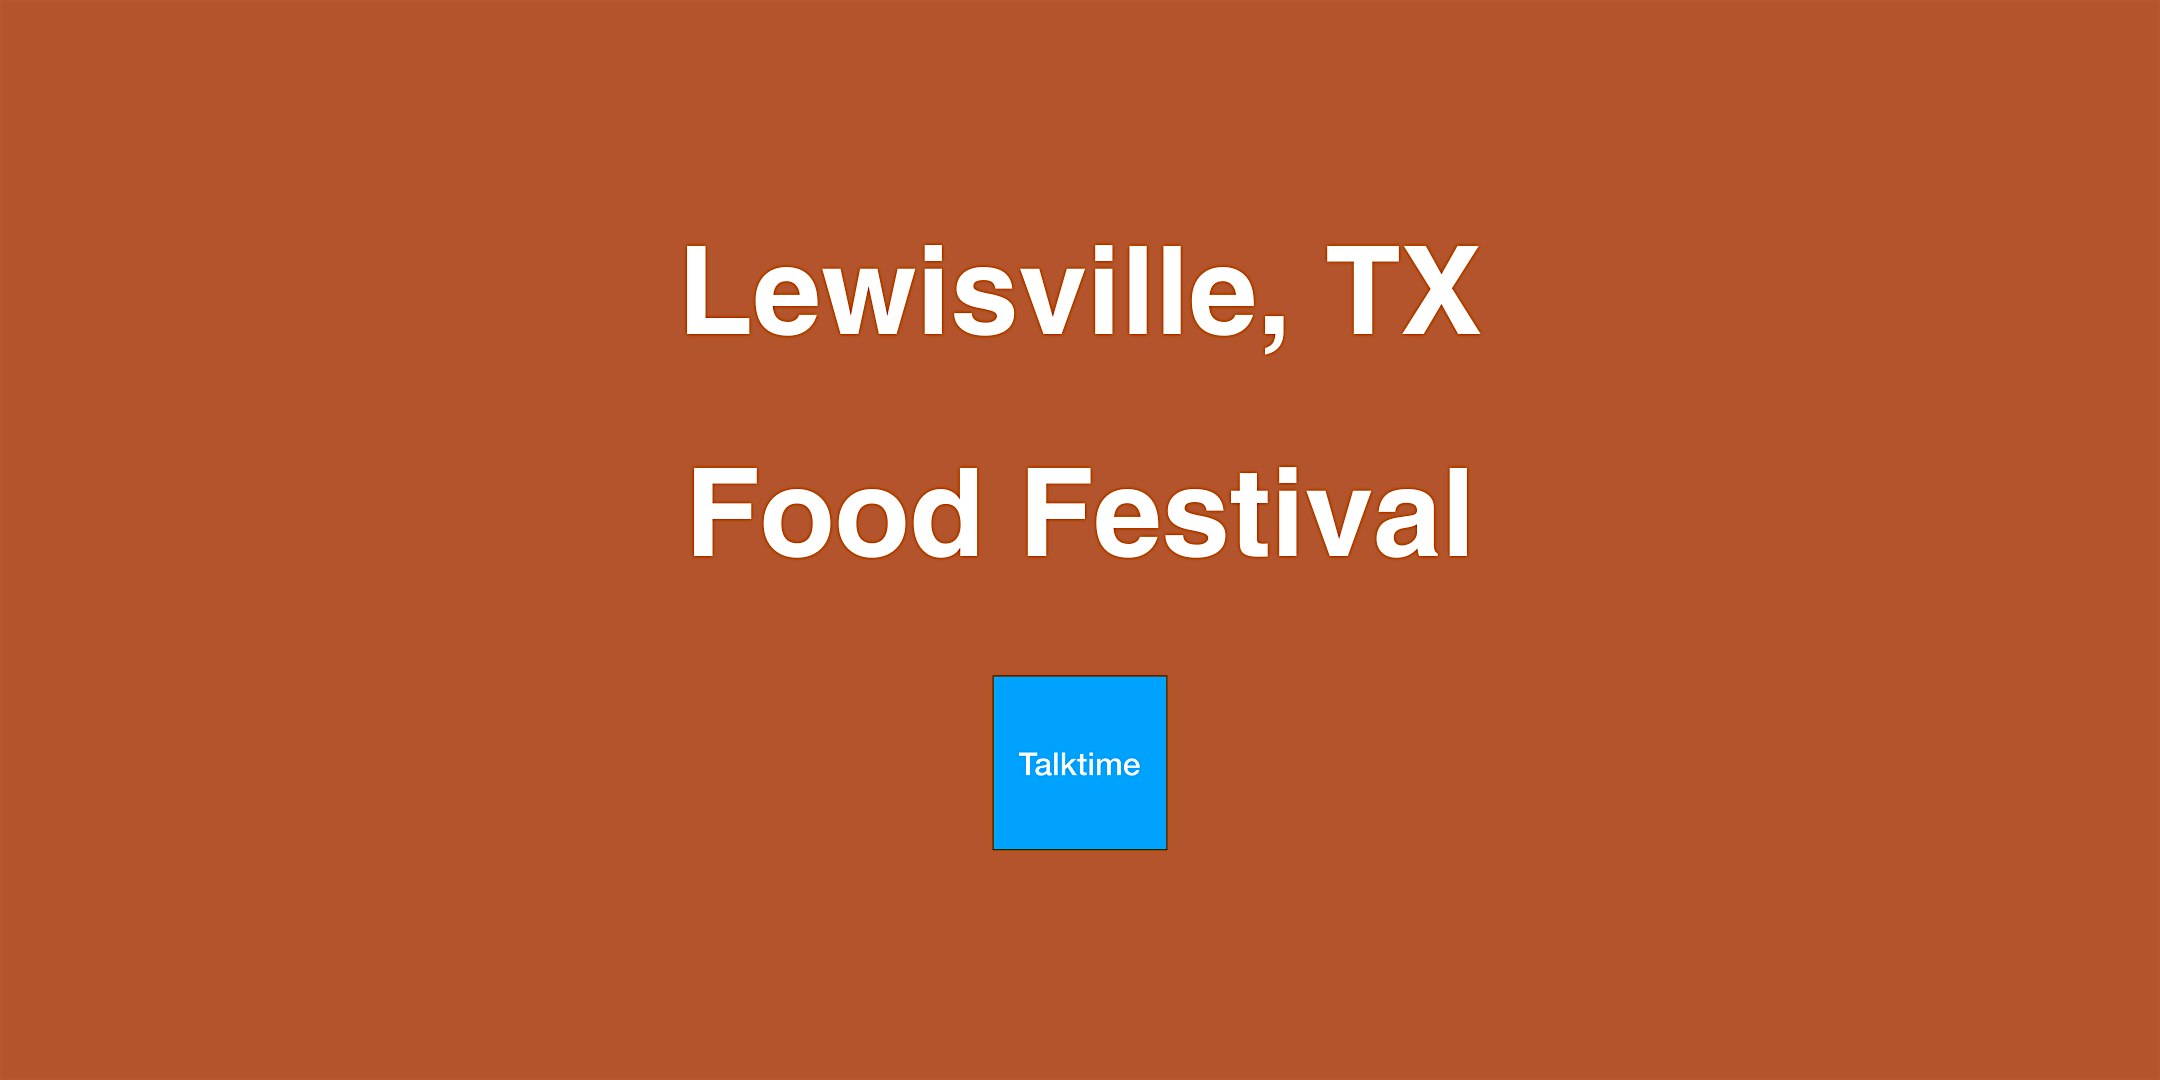 Food Festival - Lewisville